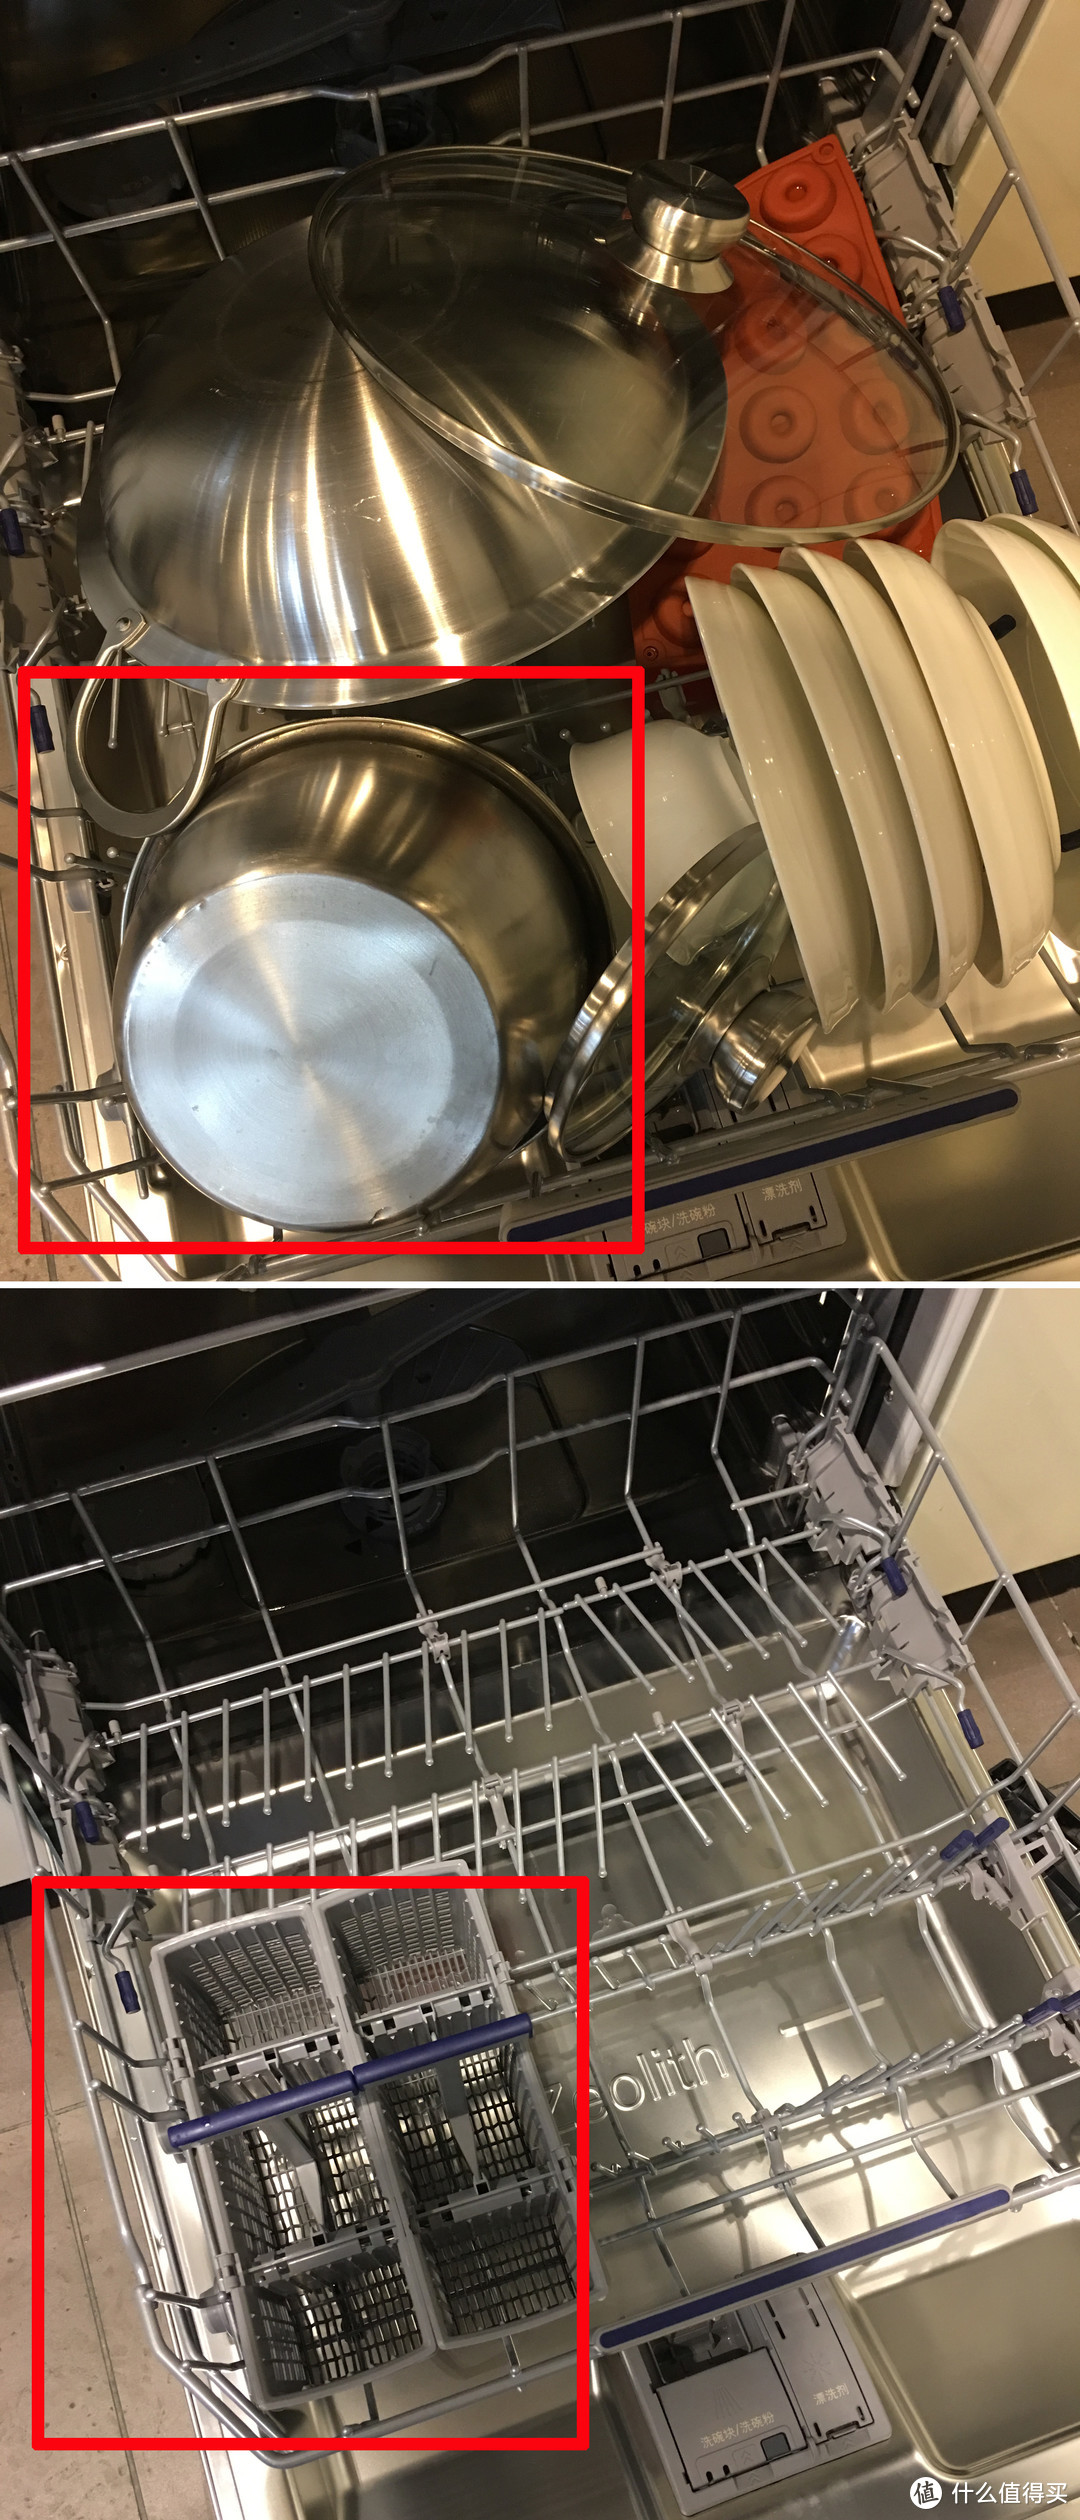 晶蕾烘干和热风烘干的洗碗机，哪种烘干效果更好？晶蕾和热风烘干的洗碗机应该怎么选？